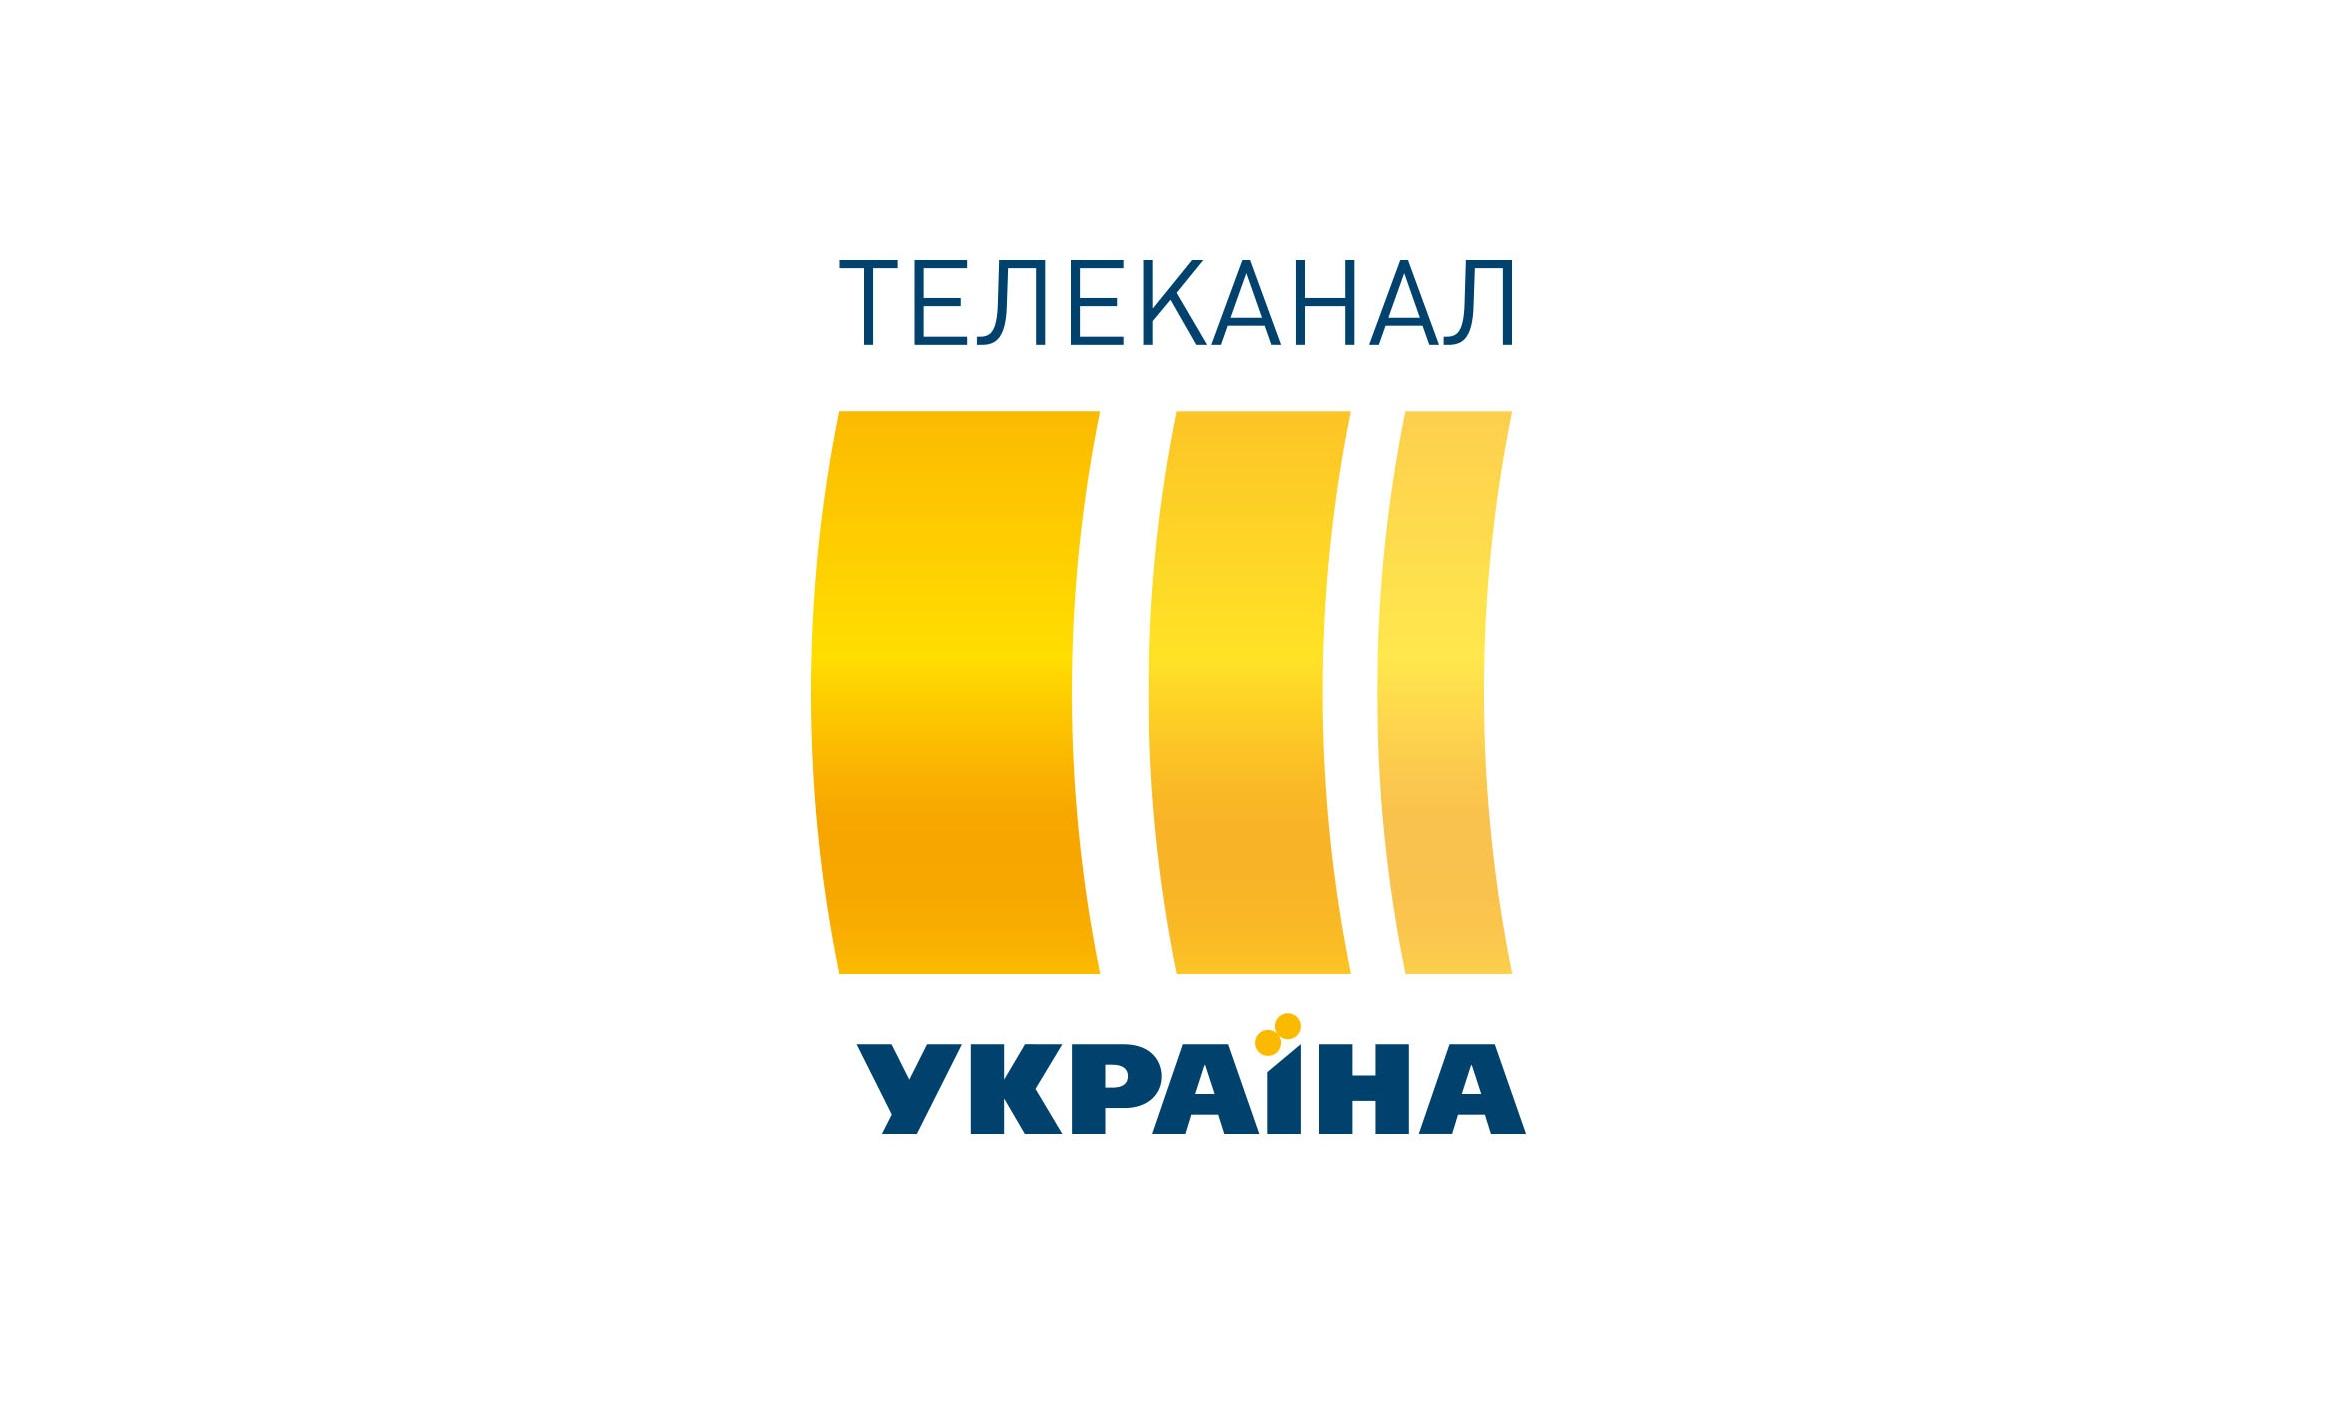 Канал украина прямая трансляции